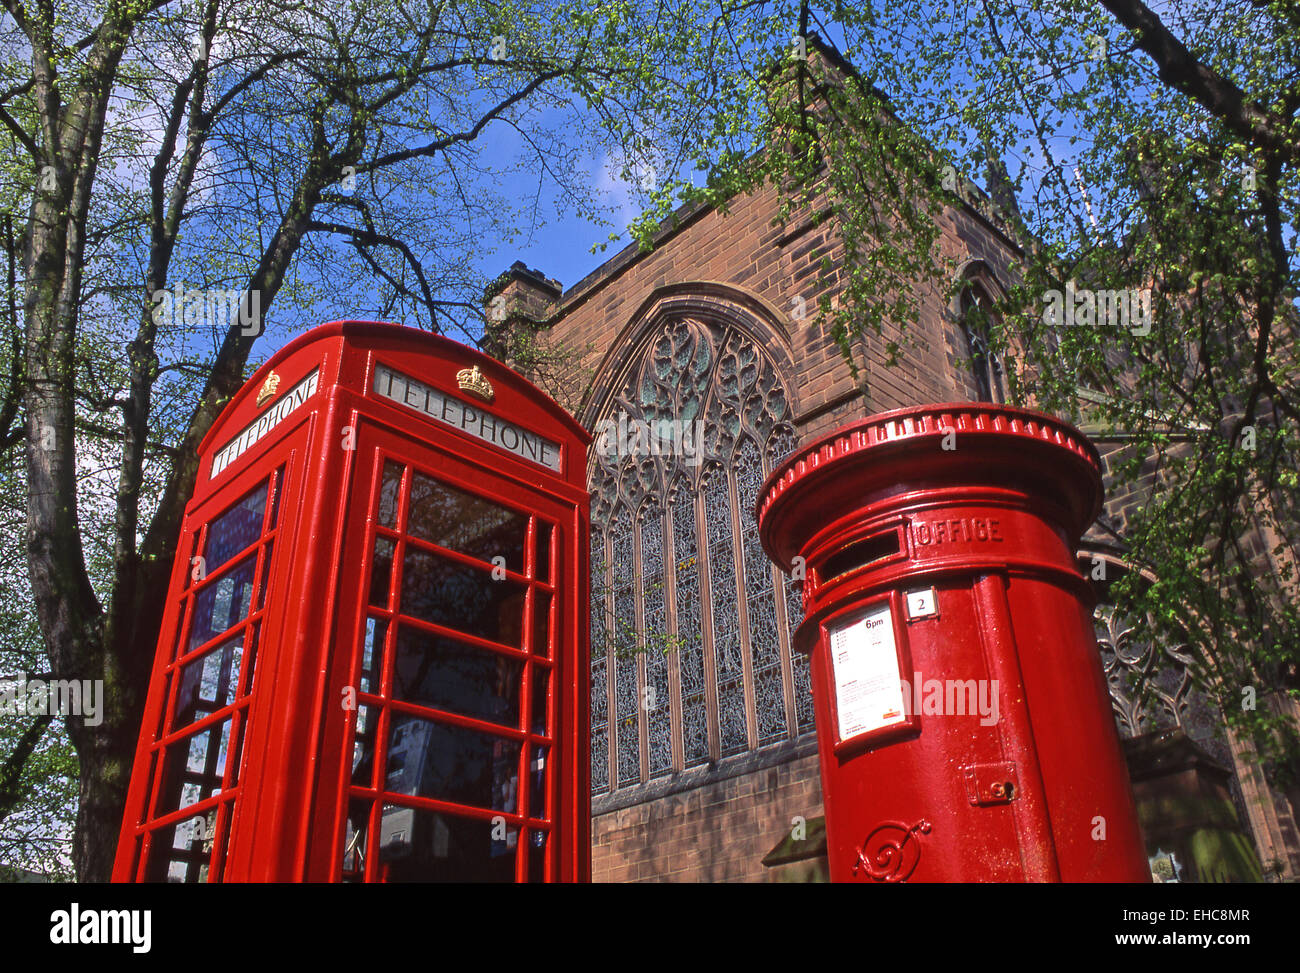 Téléphone rouge traditionnel et des boîtes postales, Chester, Cheshire, Angleterre, RU Banque D'Images